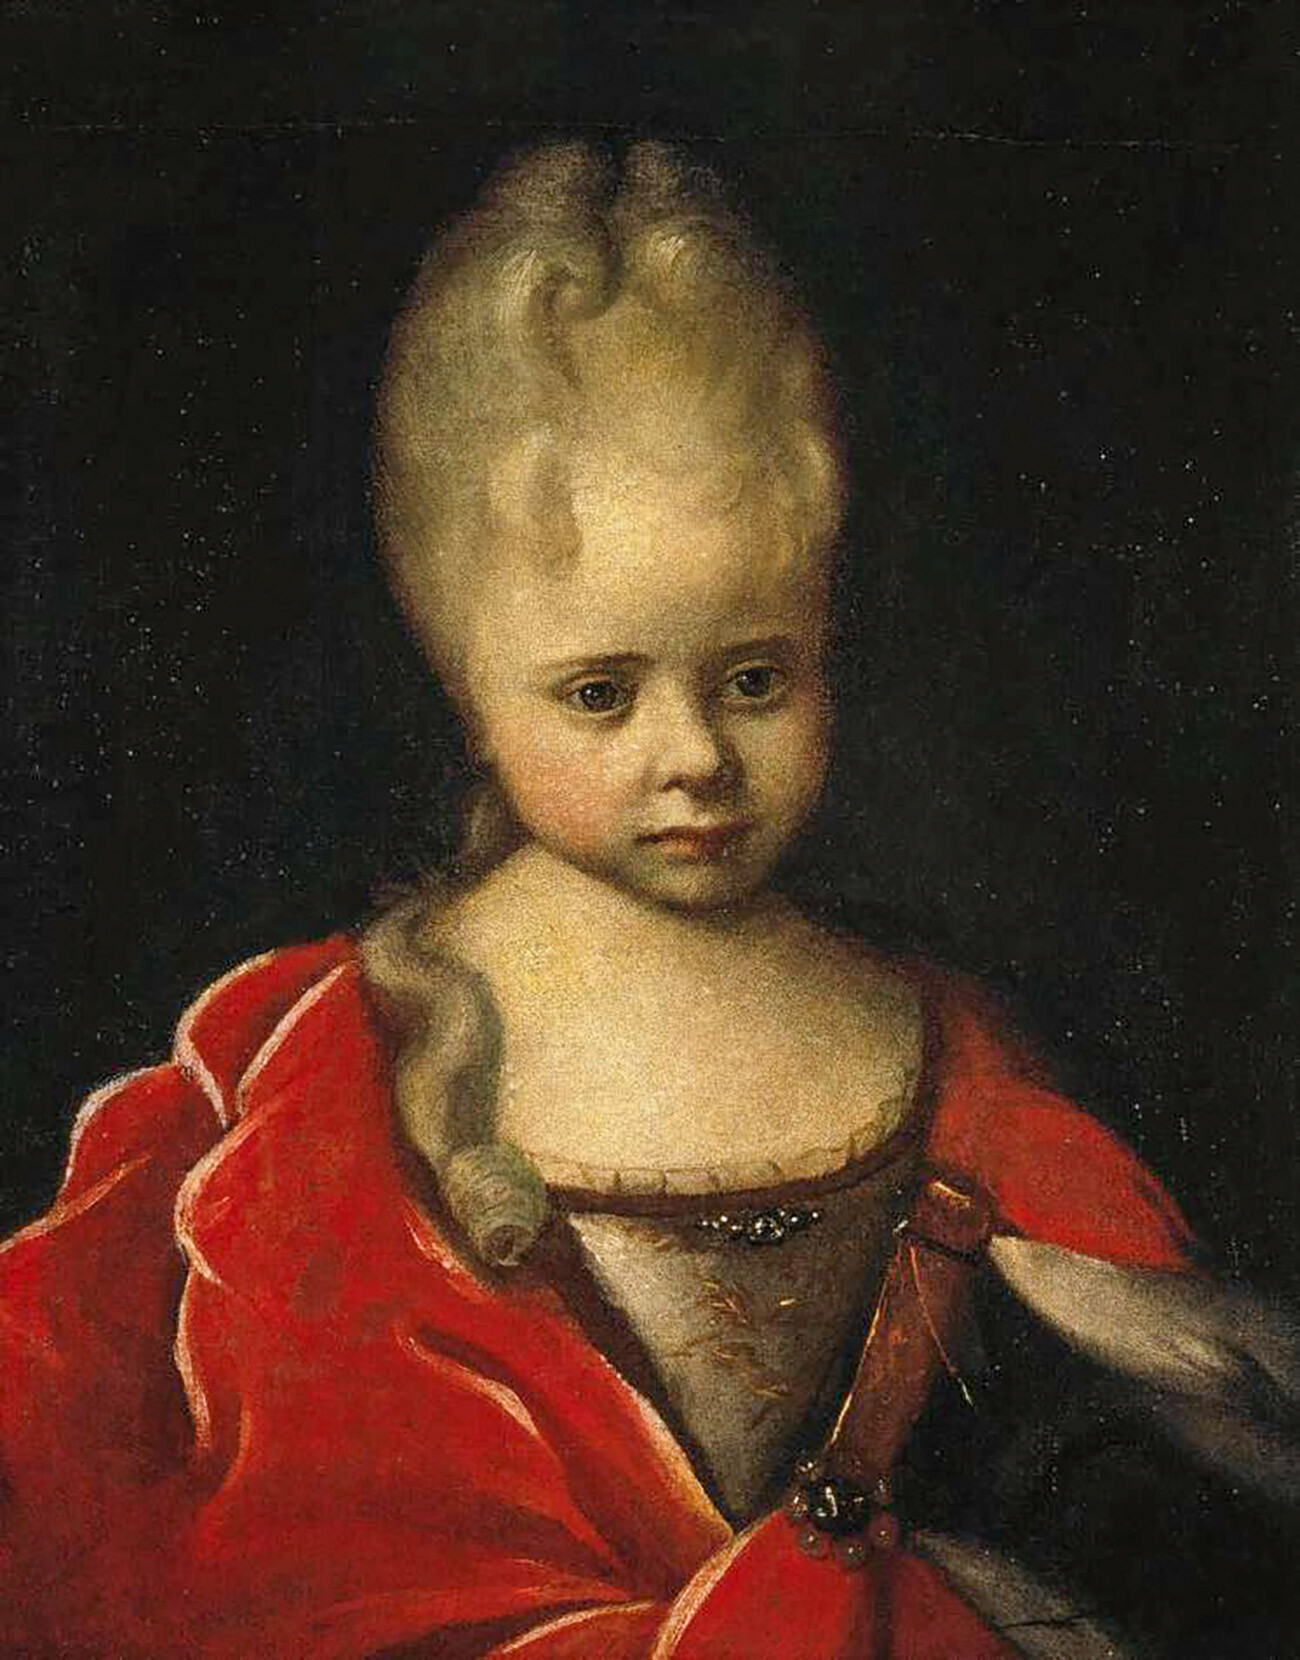 La figlia di Pietro il Grande, Elizaveta, da bambina, nel 1712-1713